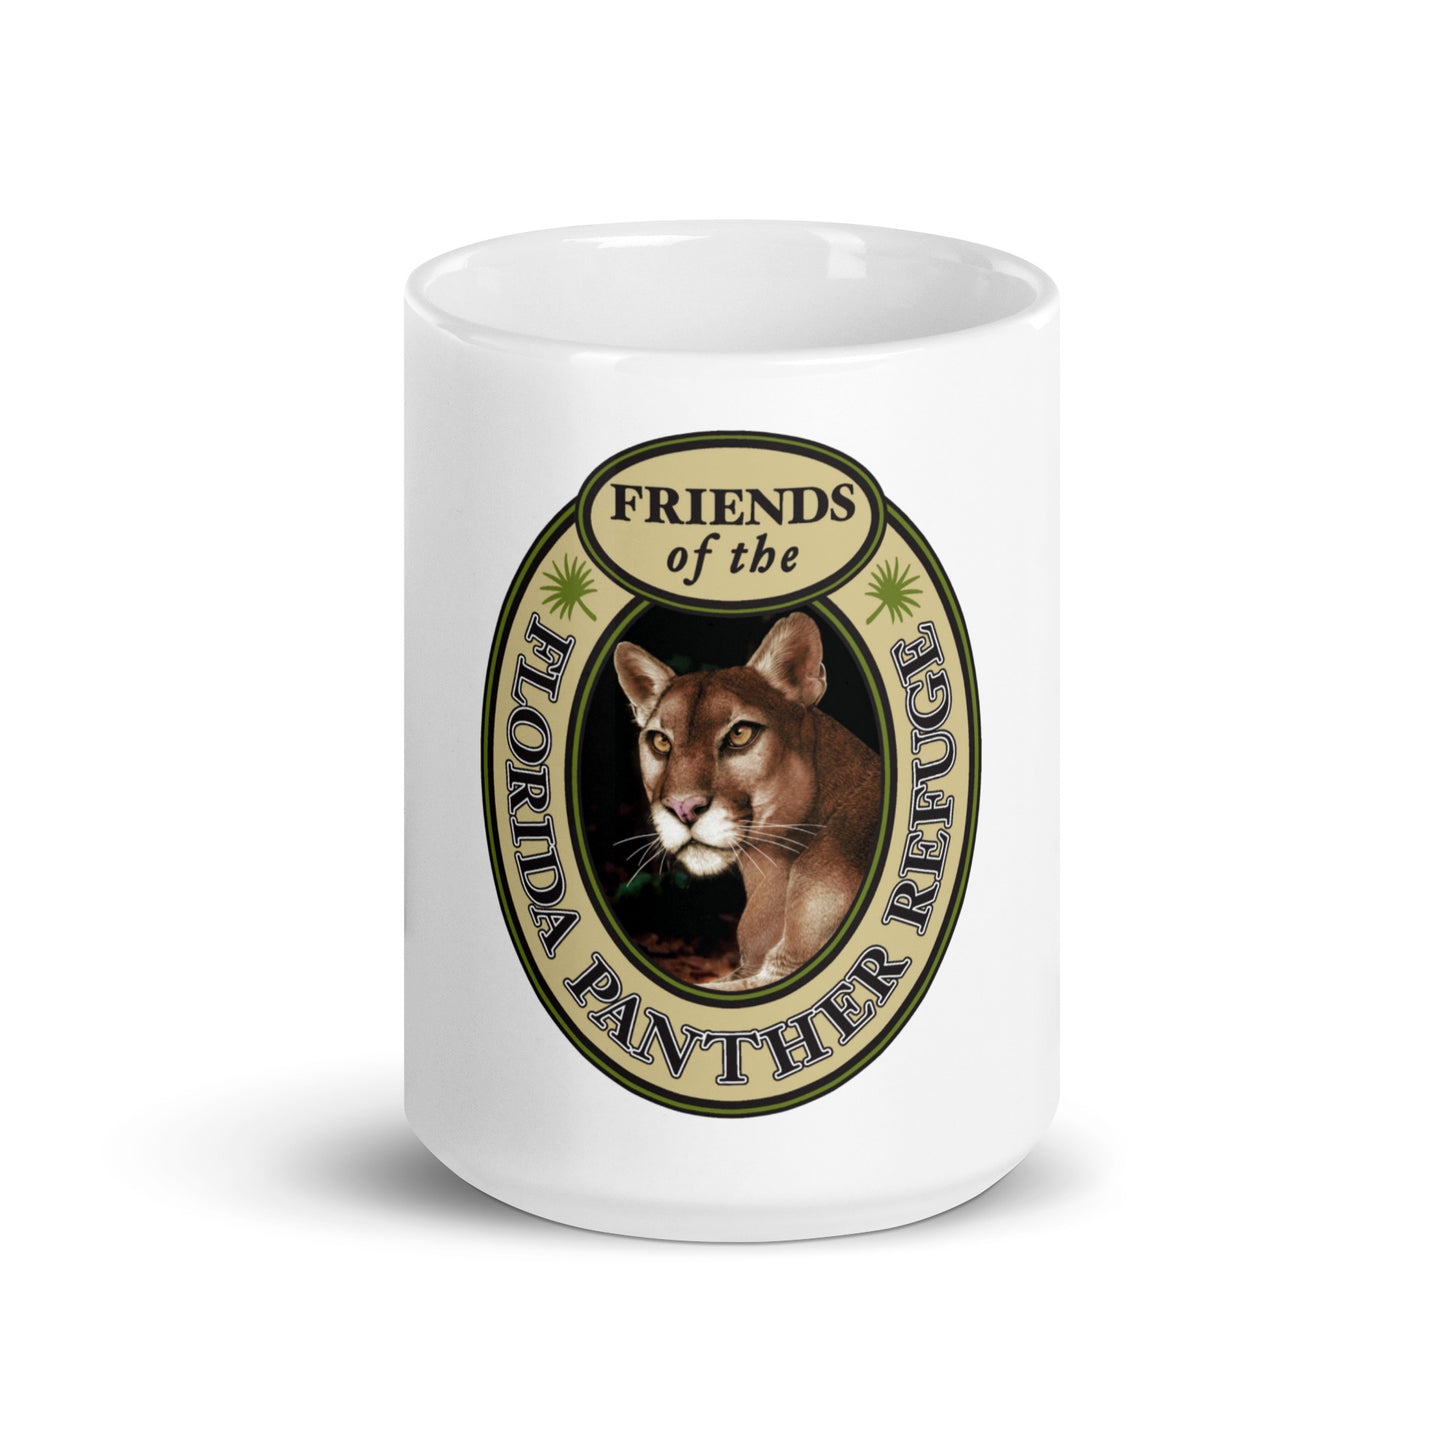 Friends of the Panther Refuge mug